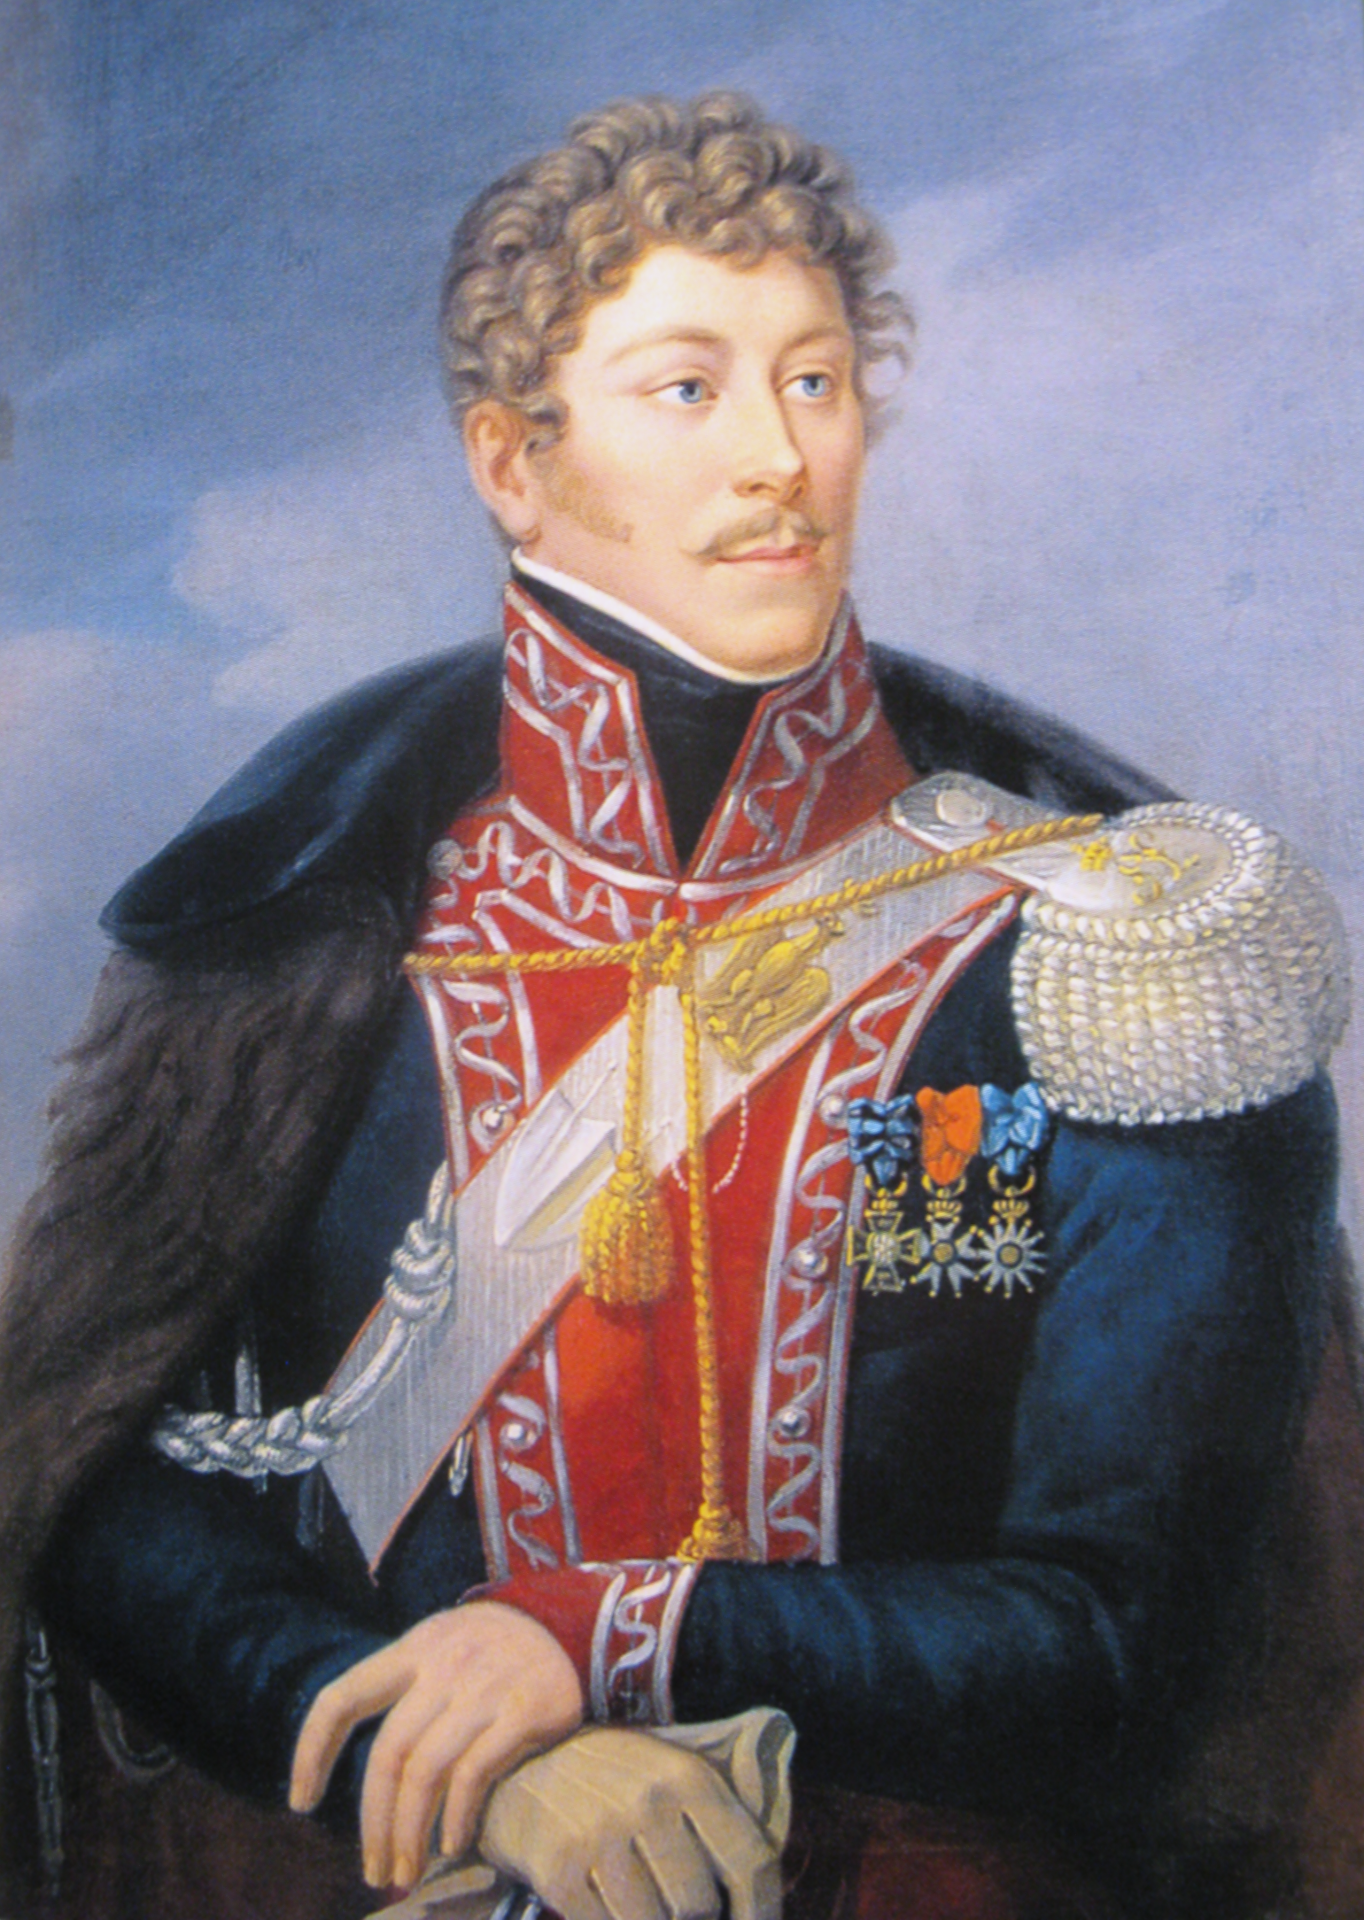 Pułkownik Jan Leon Kozietulski po roku 1815. Źródło: Wikimedia Commons.